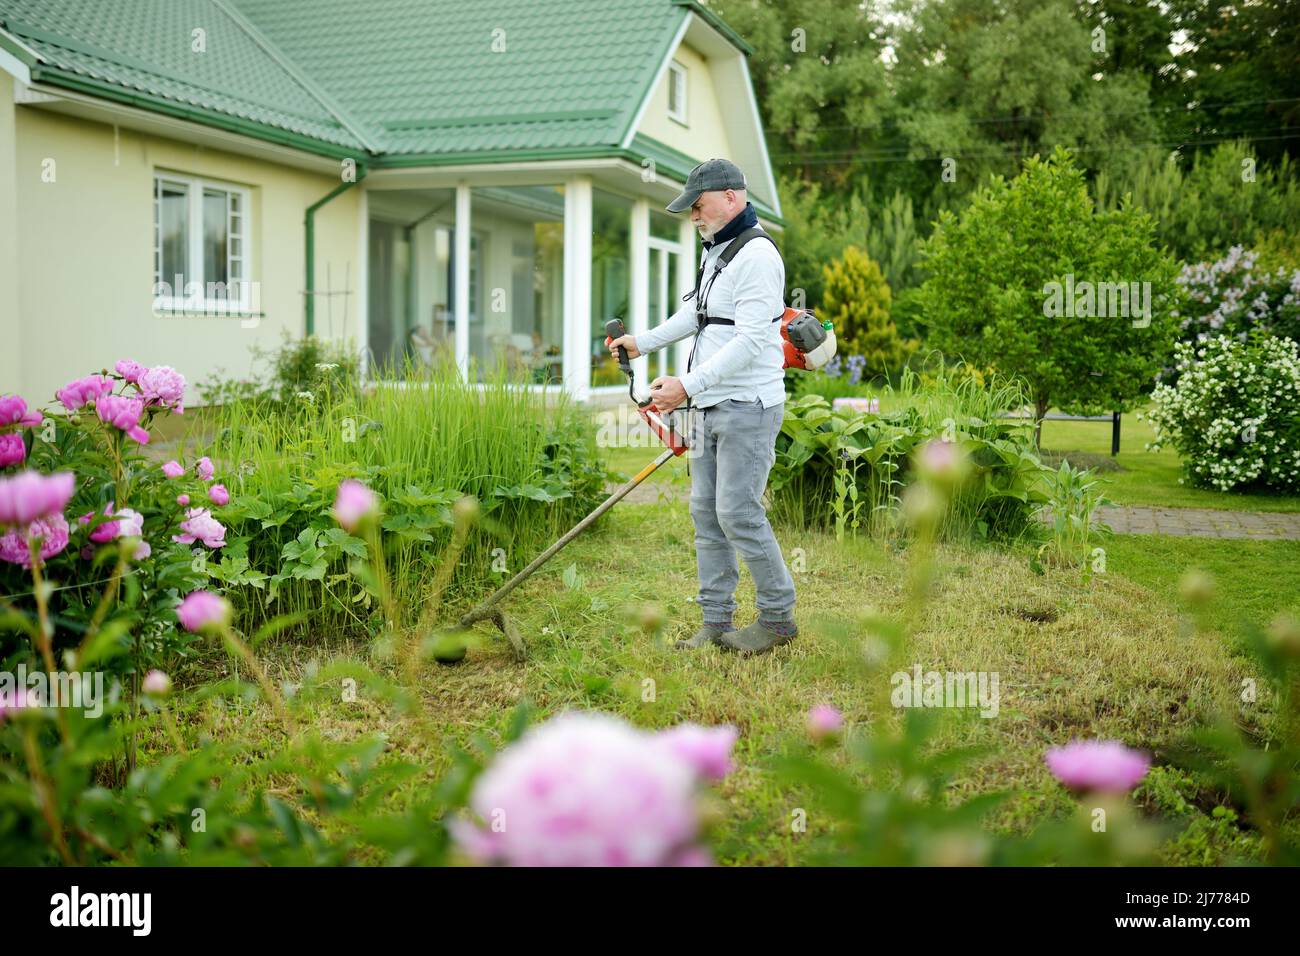 Mann mäht hohes Gras mit Elektro- oder Benzin-Rasentrimmer im Hinterhof.  Werkzeuge und Geräte für die Gartenpflege. Prozess des Rasentrimmens mit  dem Handmäher Stockfotografie - Alamy